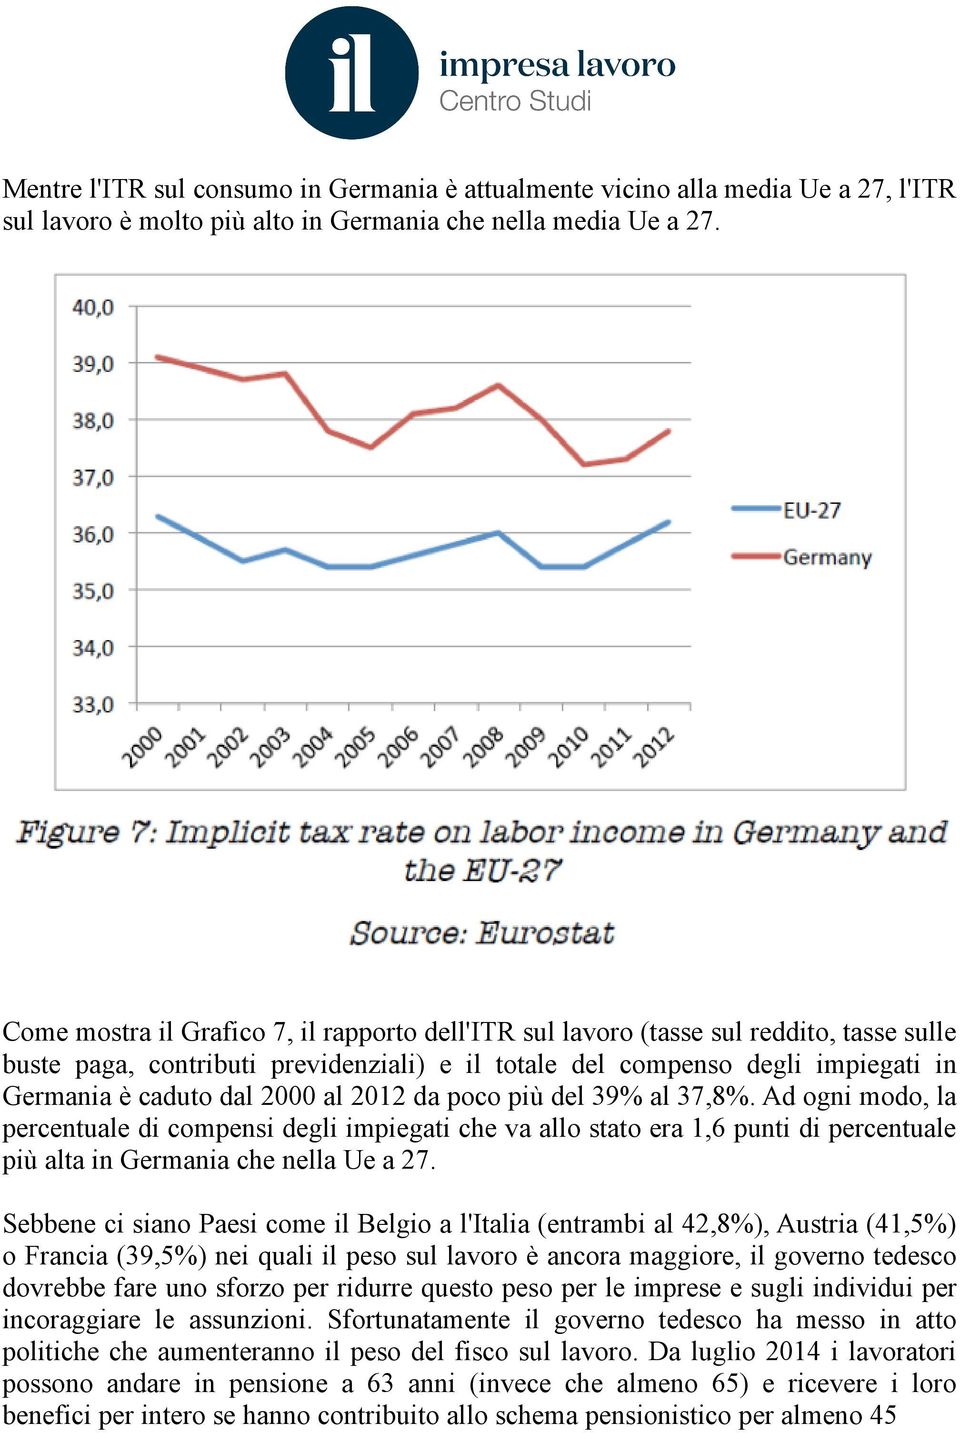 al 2012 da poco più del 39% al 37,8%. Ad ogni modo, la percentuale di compensi degli impiegati che va allo stato era 1,6 punti di percentuale più alta in Germania che nella Ue a 27.